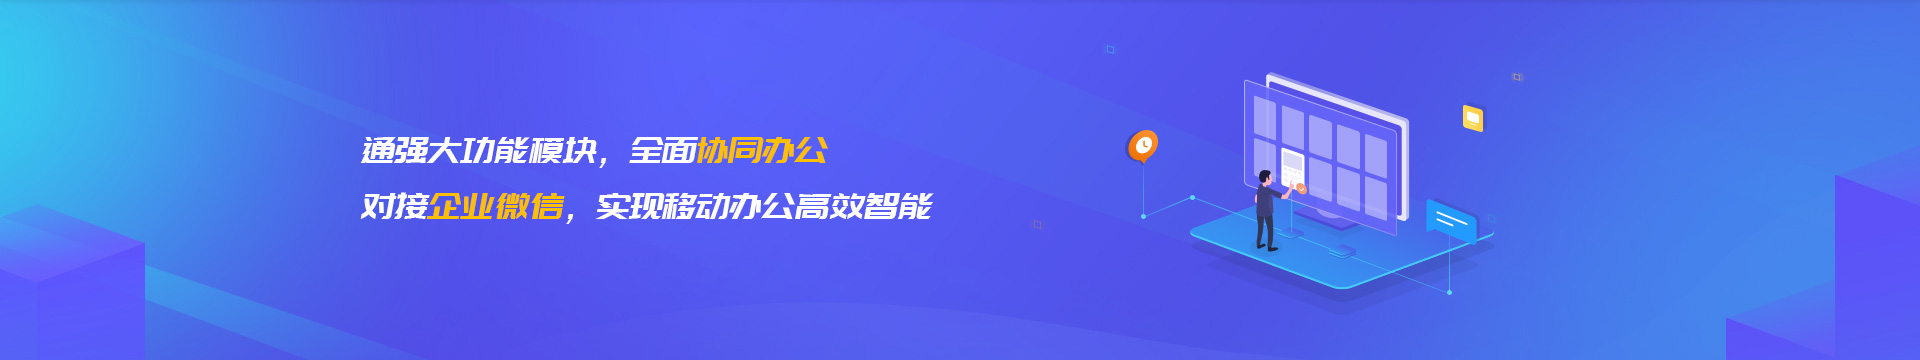 芜湖企业微信开发